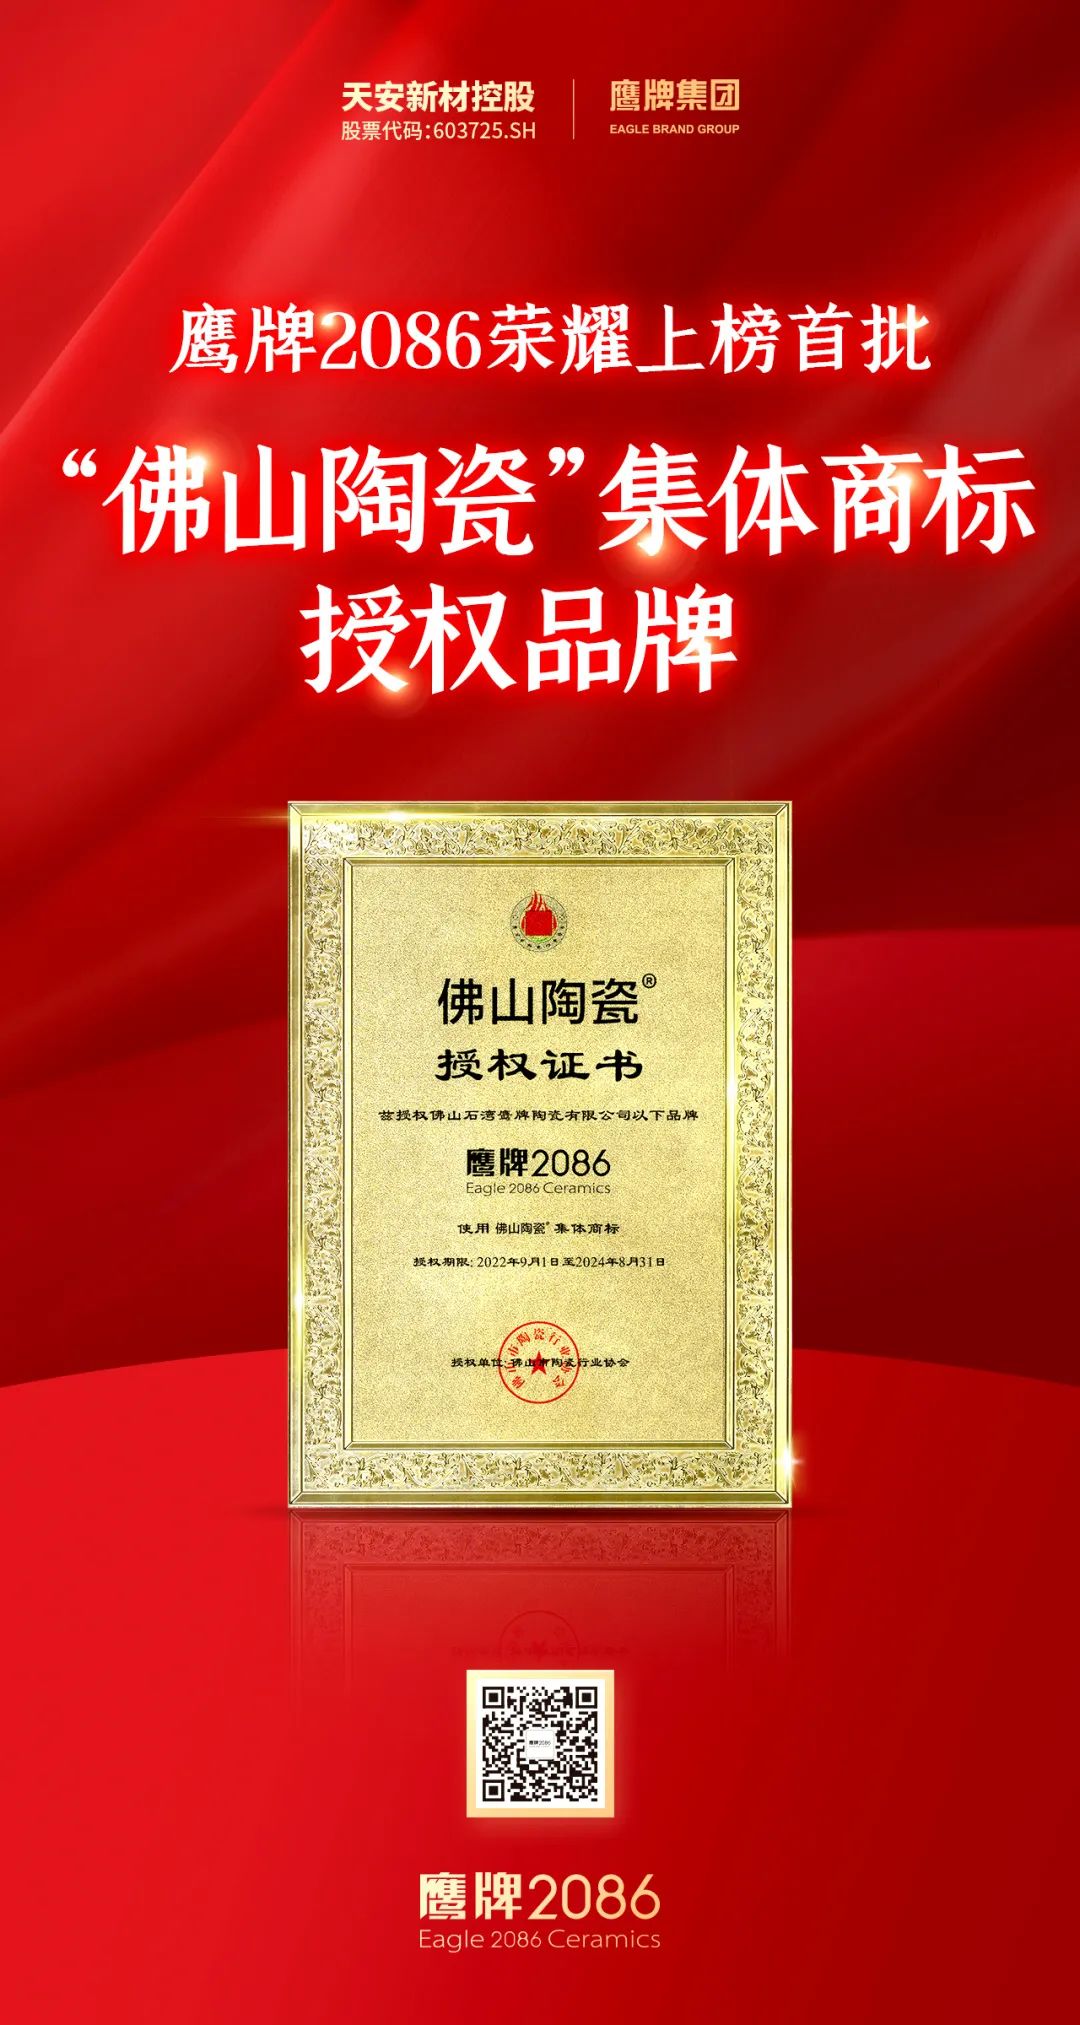 荣耀上榜 | 鹰牌2086成为首批“佛山陶瓷”集体商标授权品牌(图16)